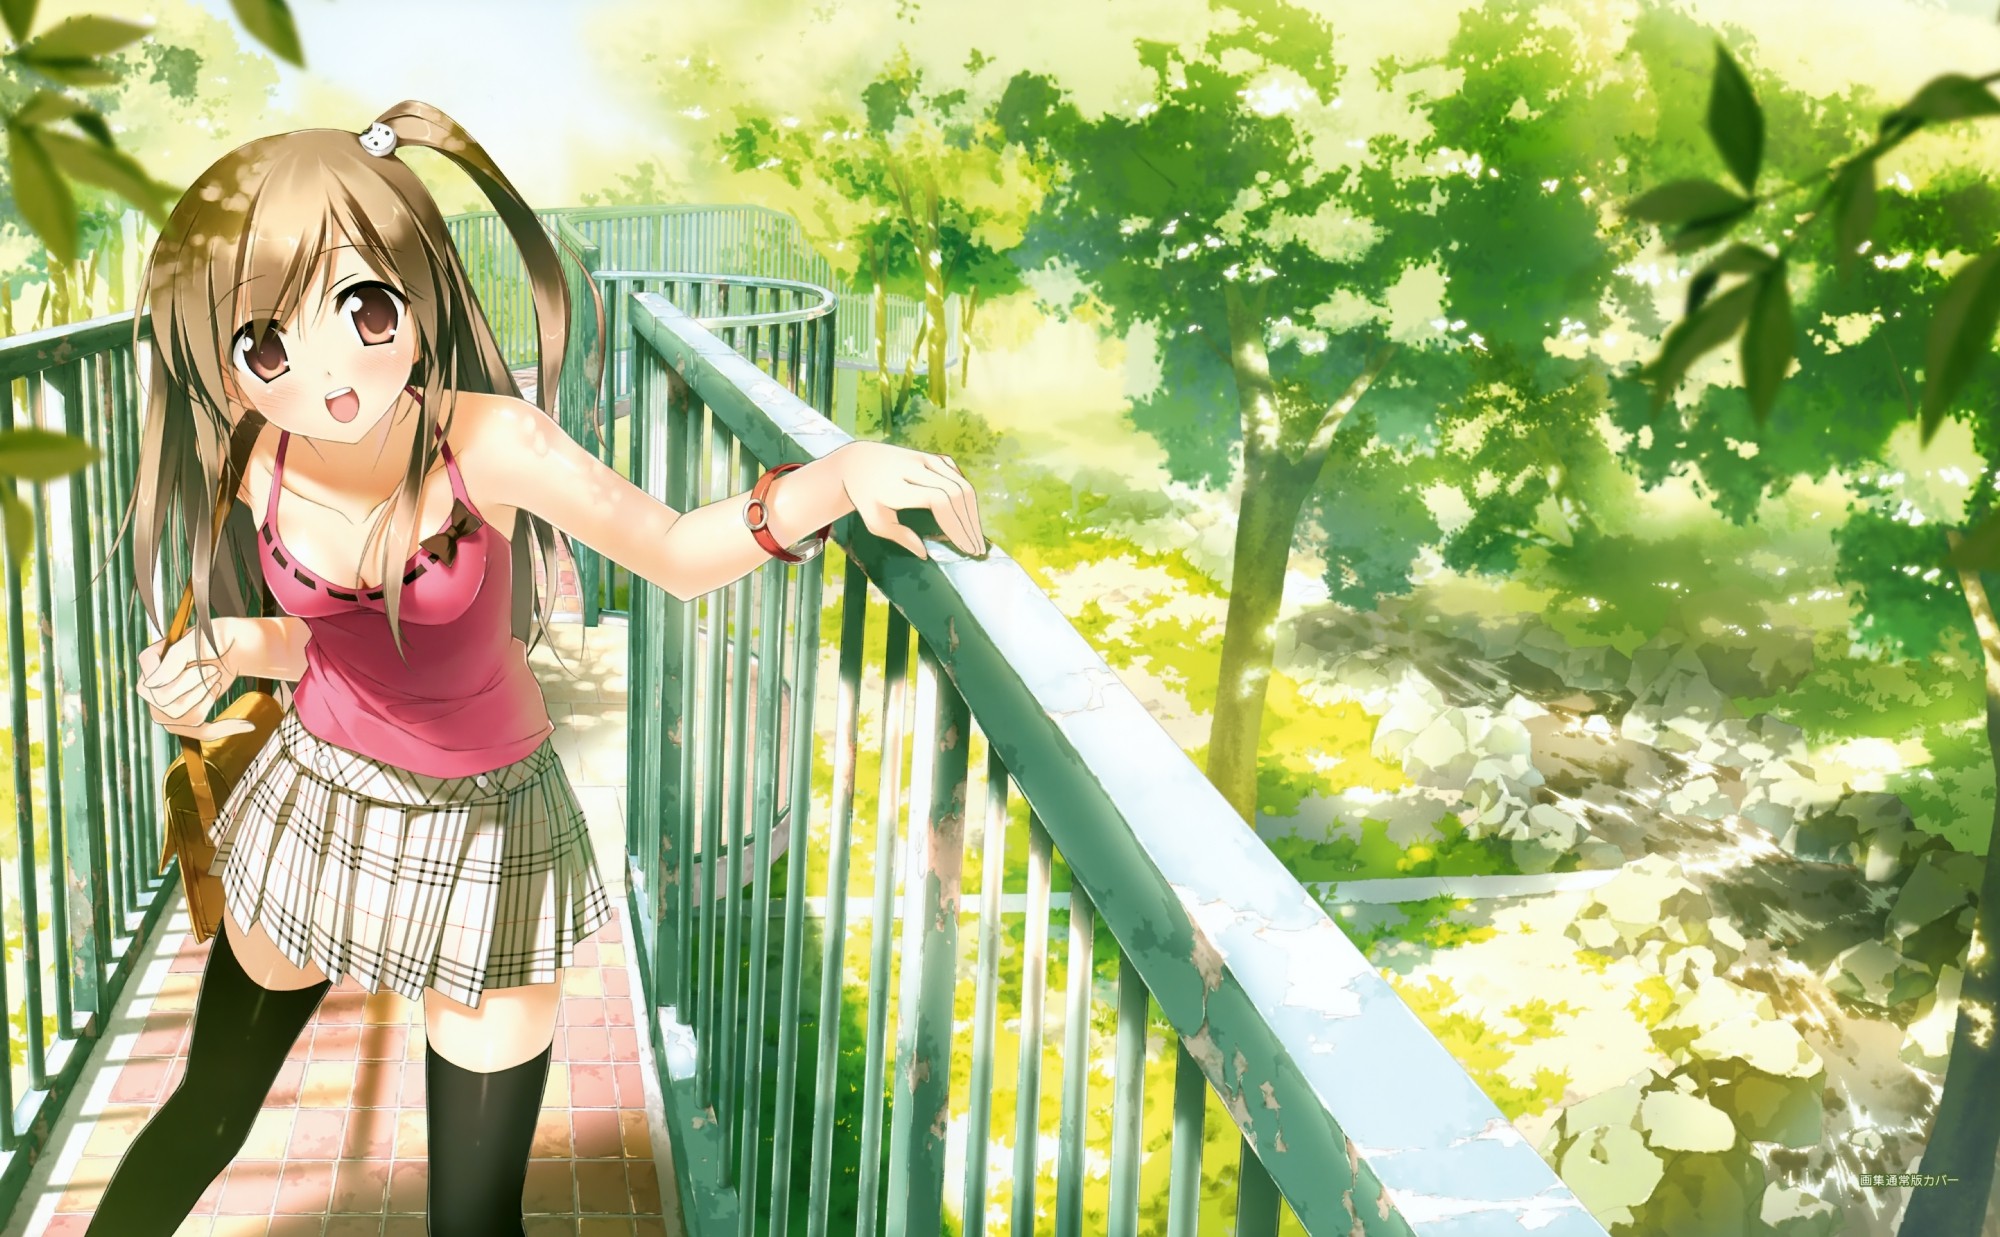 Anime 2000x1237 anime girls schoolgirl bridge garden smiling anime Kantoku miniskirt brunette open mouth trees